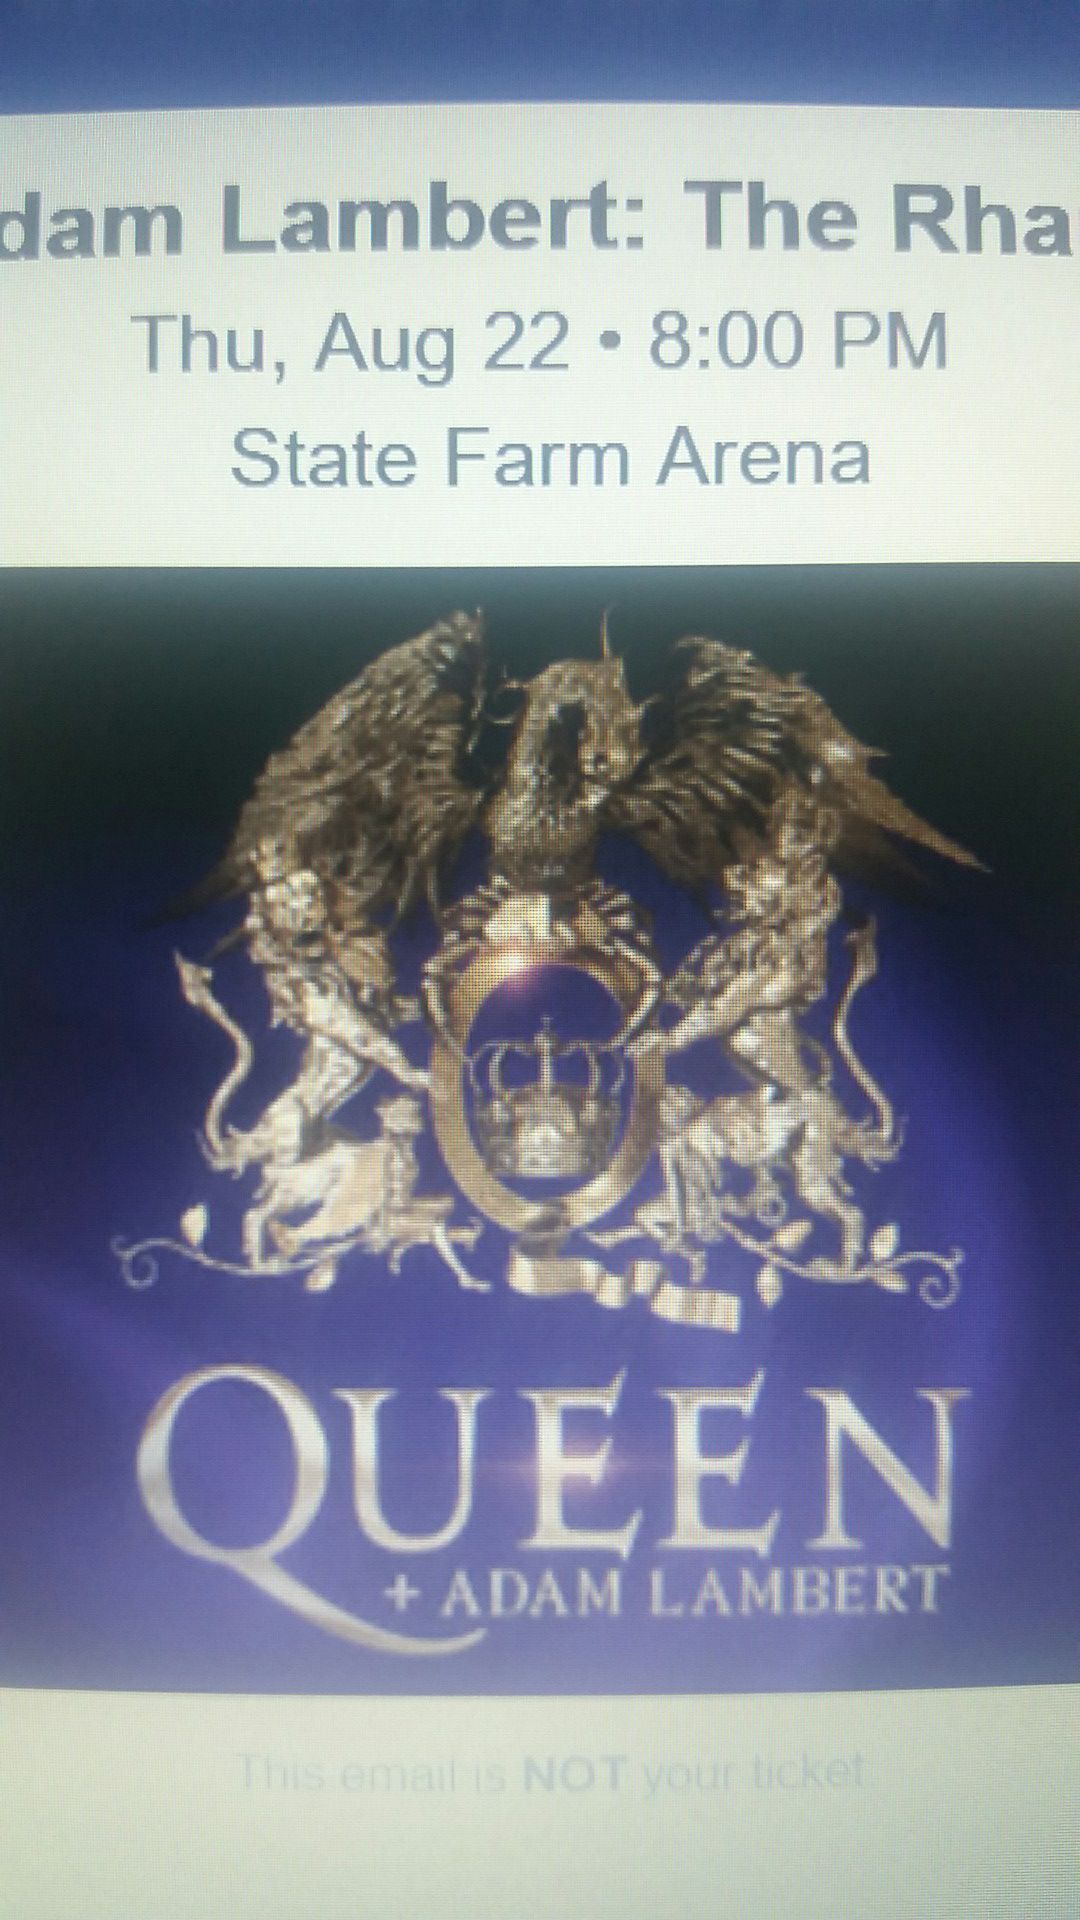 Ticket to Queen with Adam Lambert Atlanta